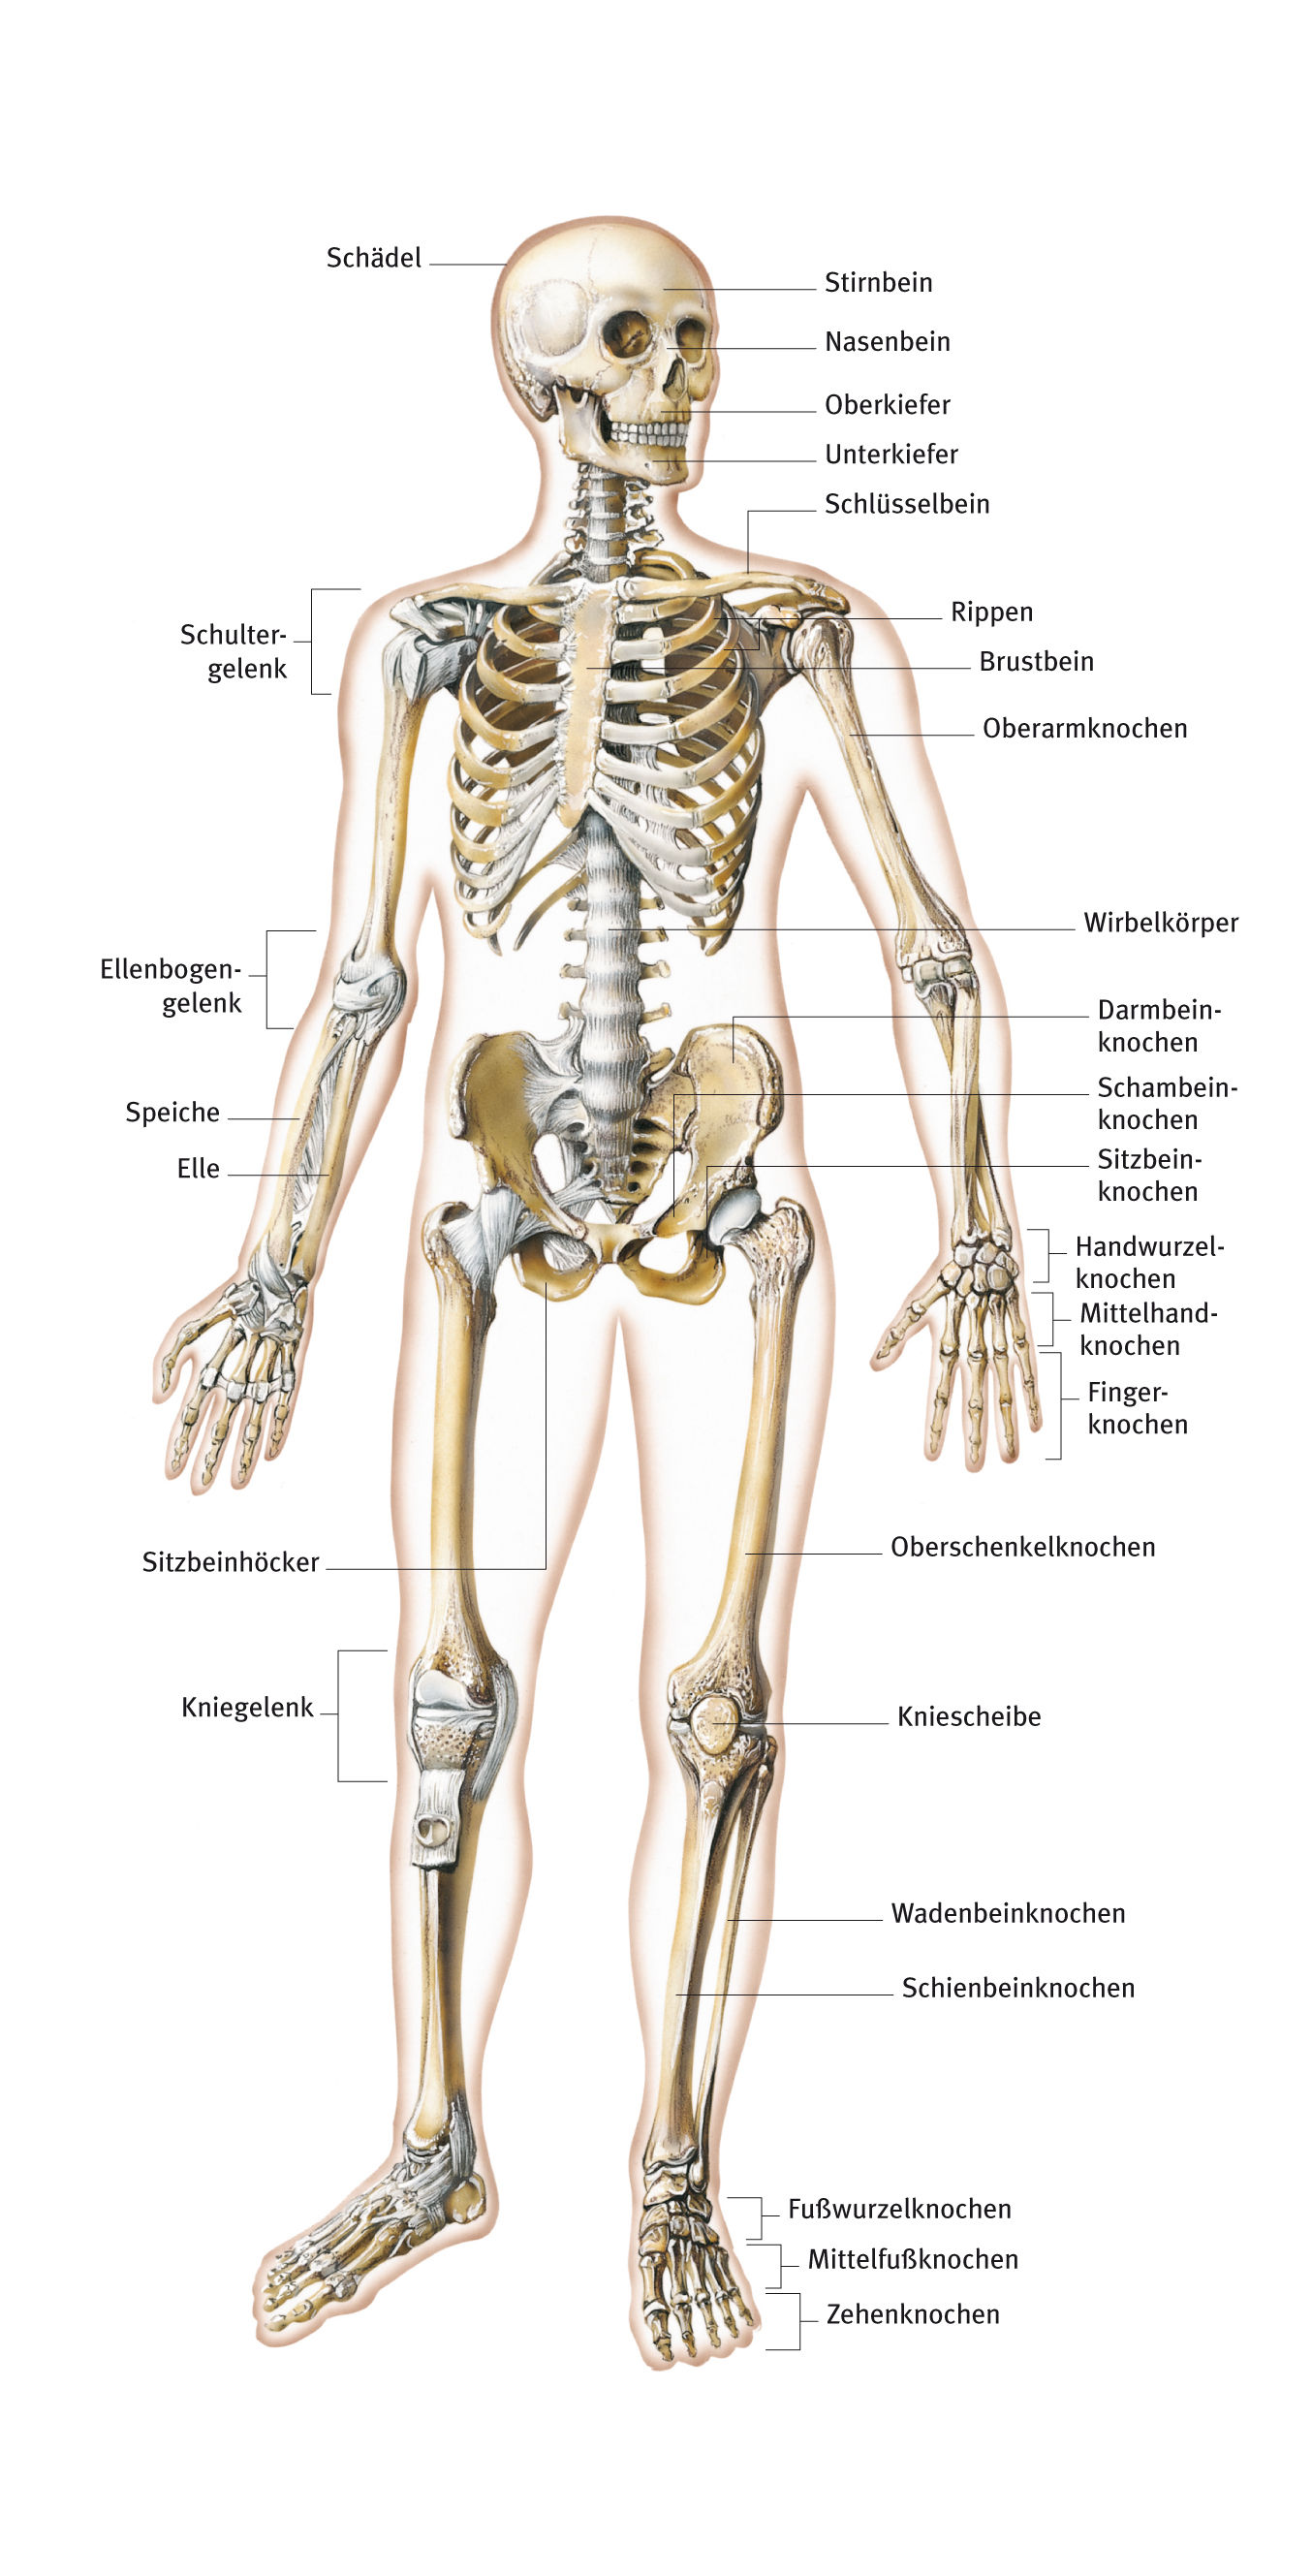 Knochen, Anatomie, aus dem Gesundheitslexikon  Gesundheit, Medizin und  Heilkunde auf